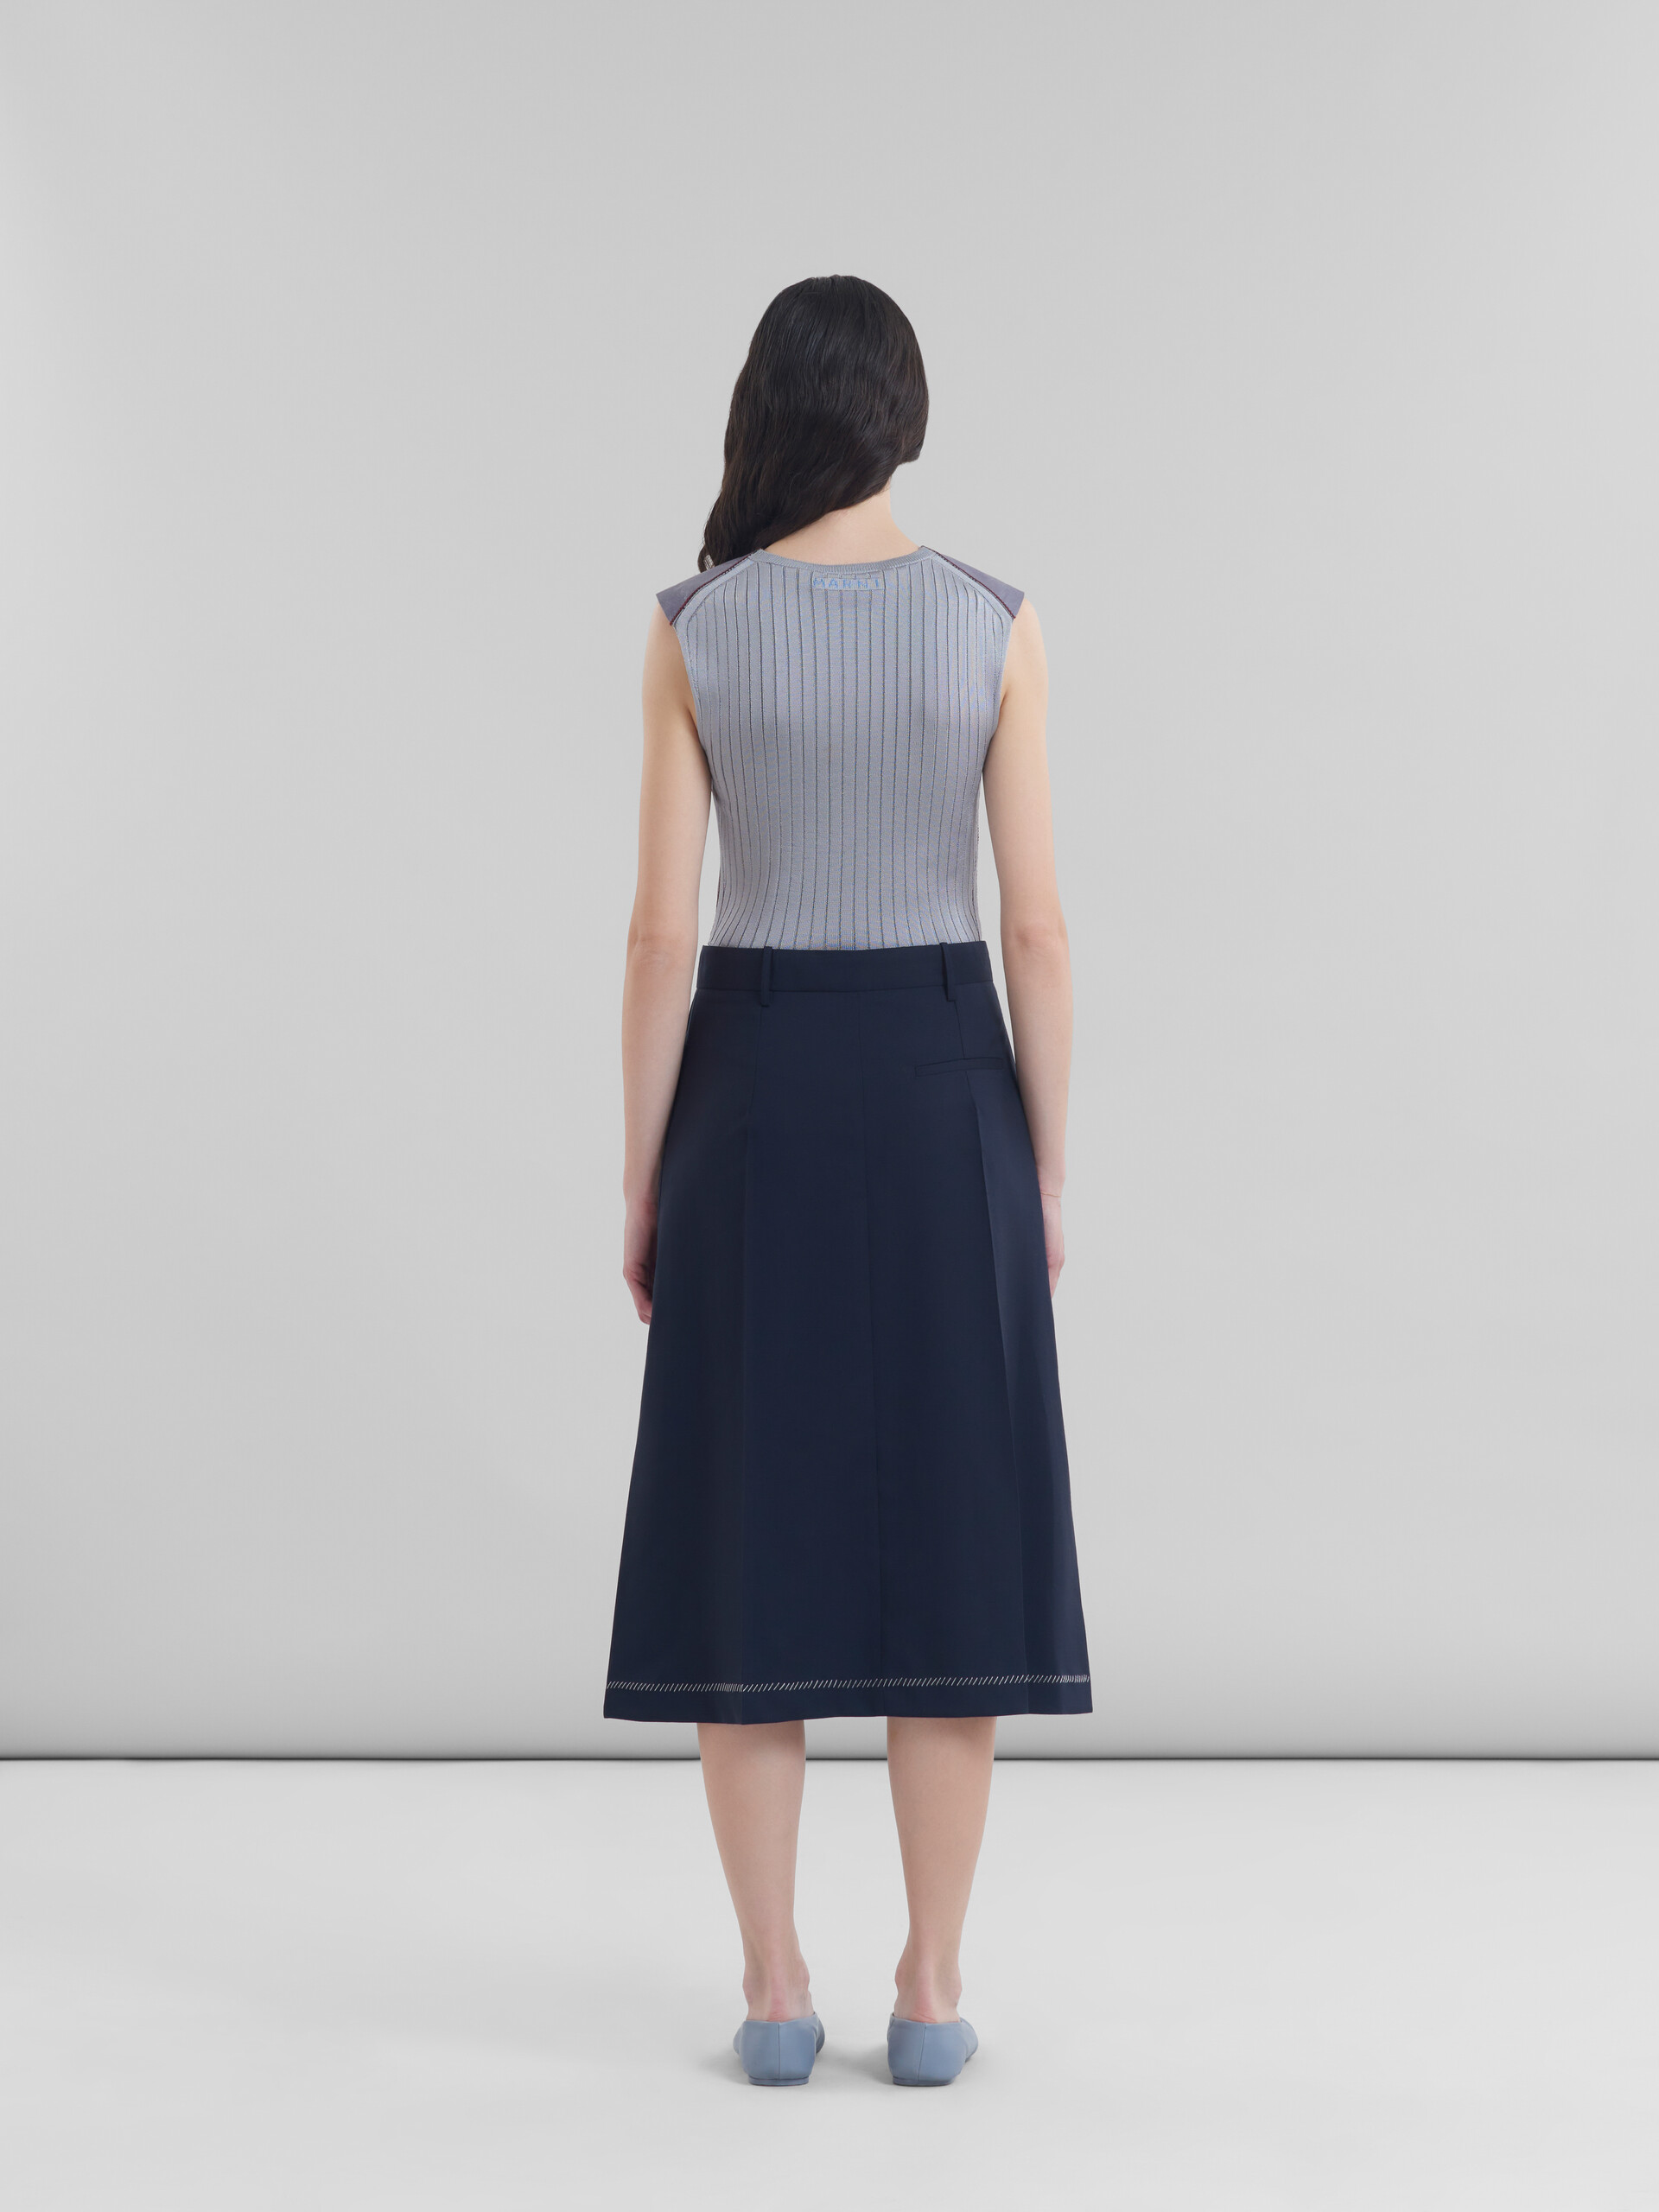 ディープブルー ウール製 ミディ丈スカート、プレスプリーツ - スカート - Image 3